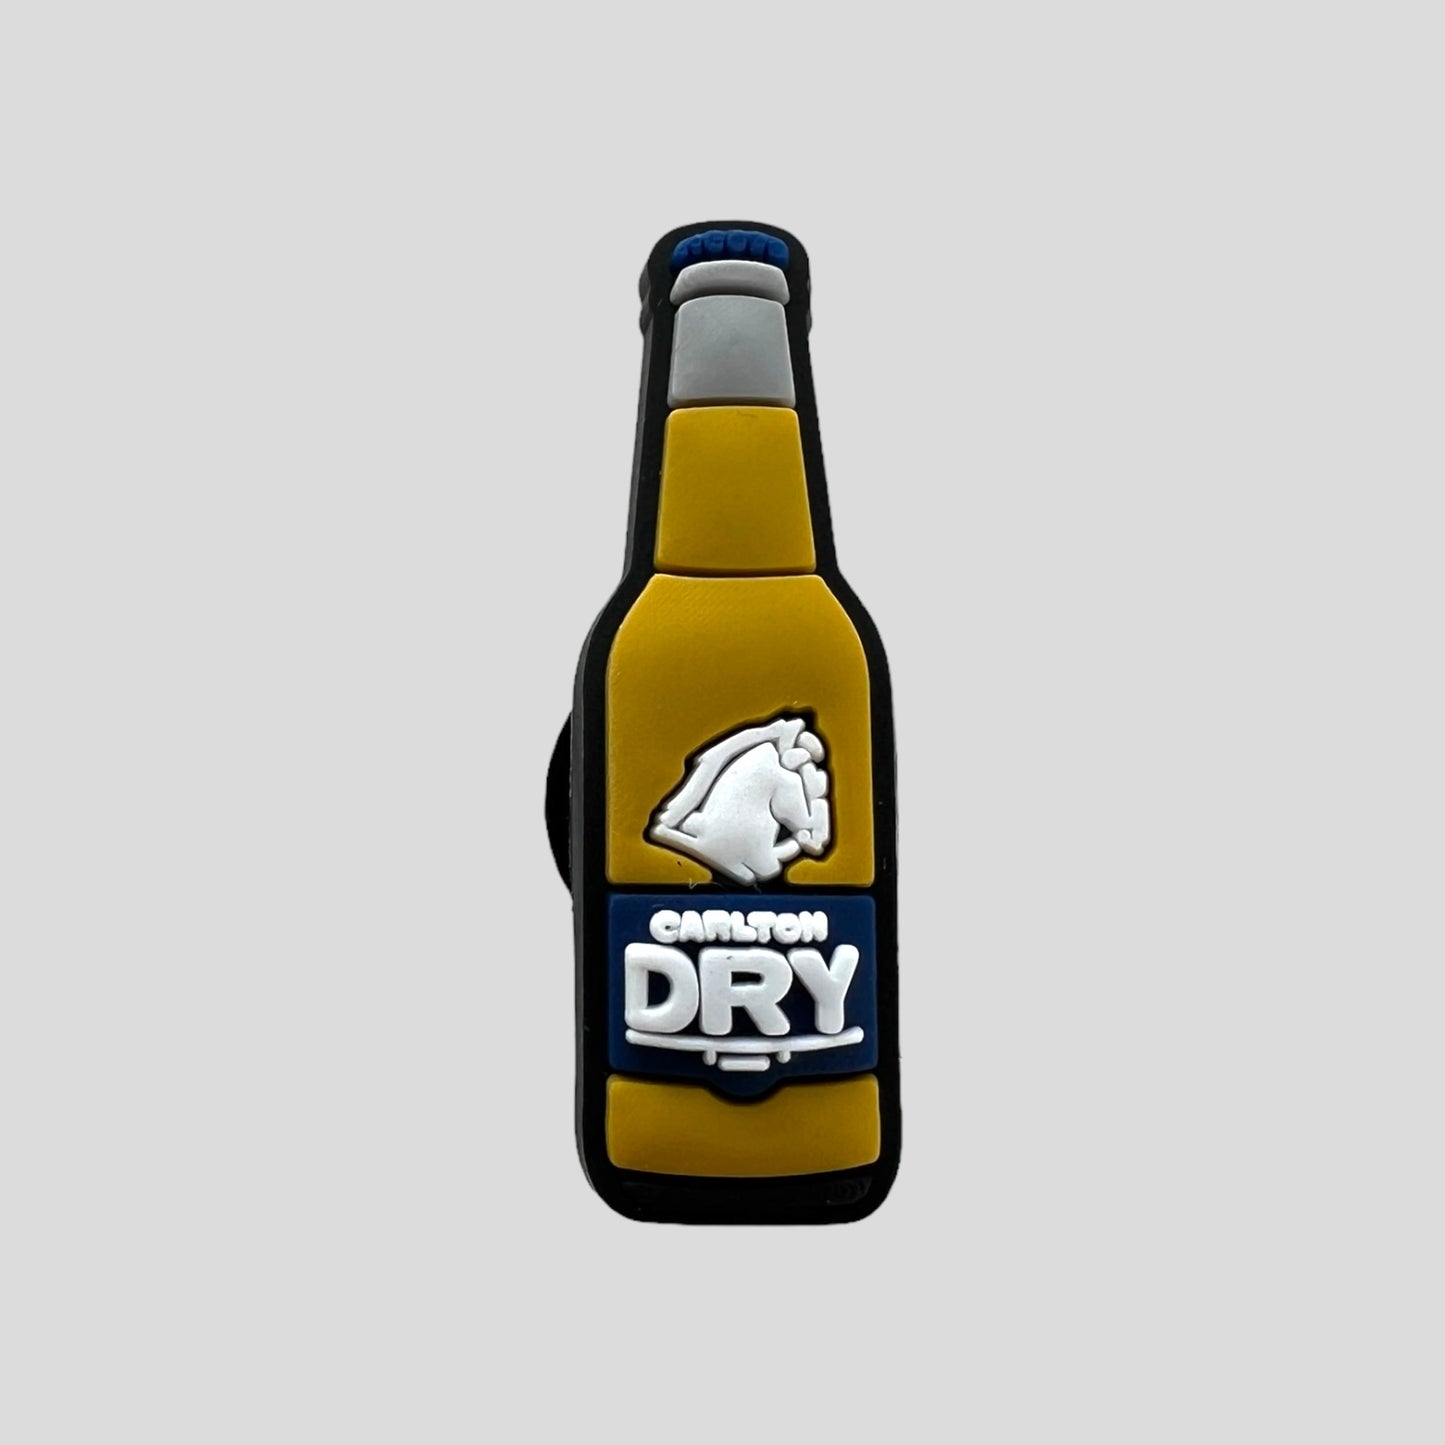 Carlton Dry Bottle | Australia